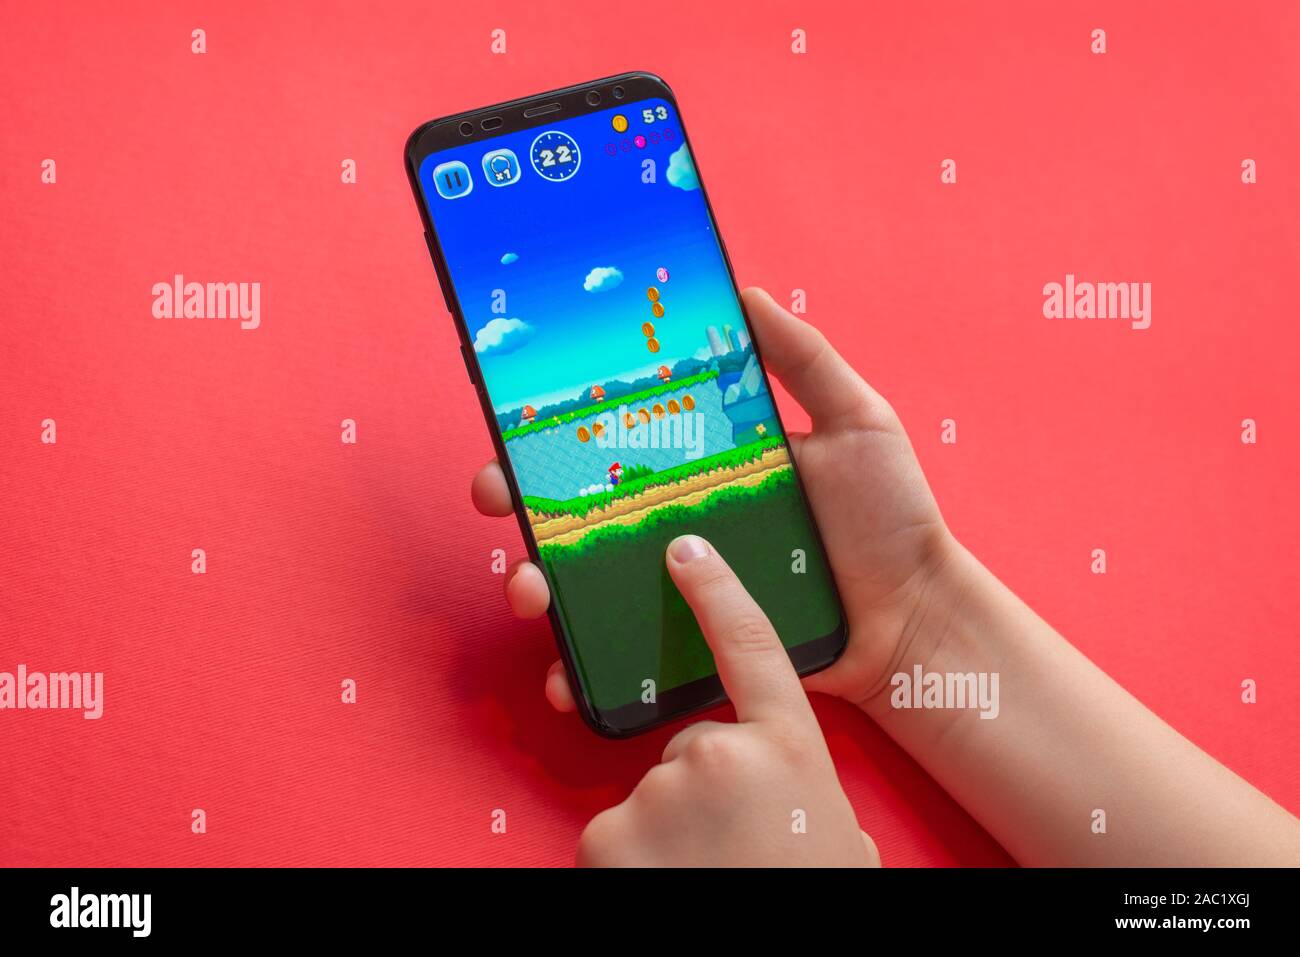 Sarajevo, Bosnie-Herzégovine - 30 novembre 2019 : Super Mario exécuter le jeu mobile sur téléphone intelligent Android moderne close-up Banque D'Images